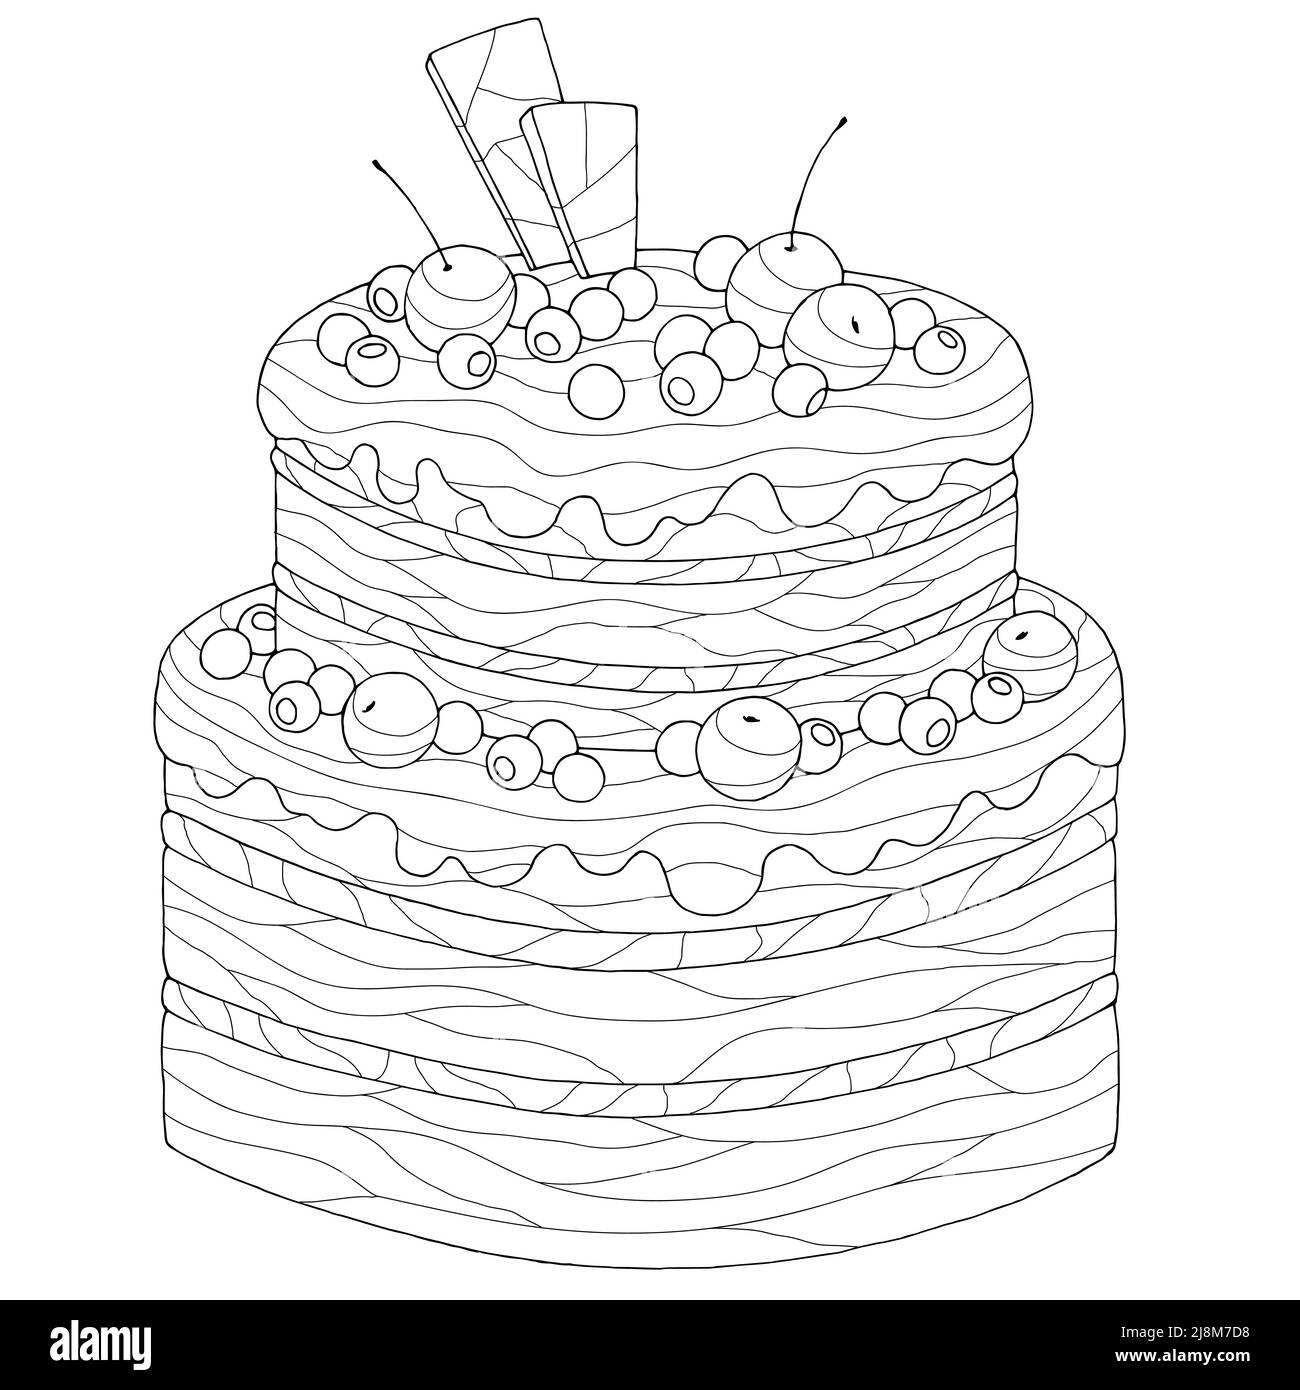 Kuchen Färbung Dessert Grafik schwarz weiß isoliert Illustration Vektor Stock Vektor